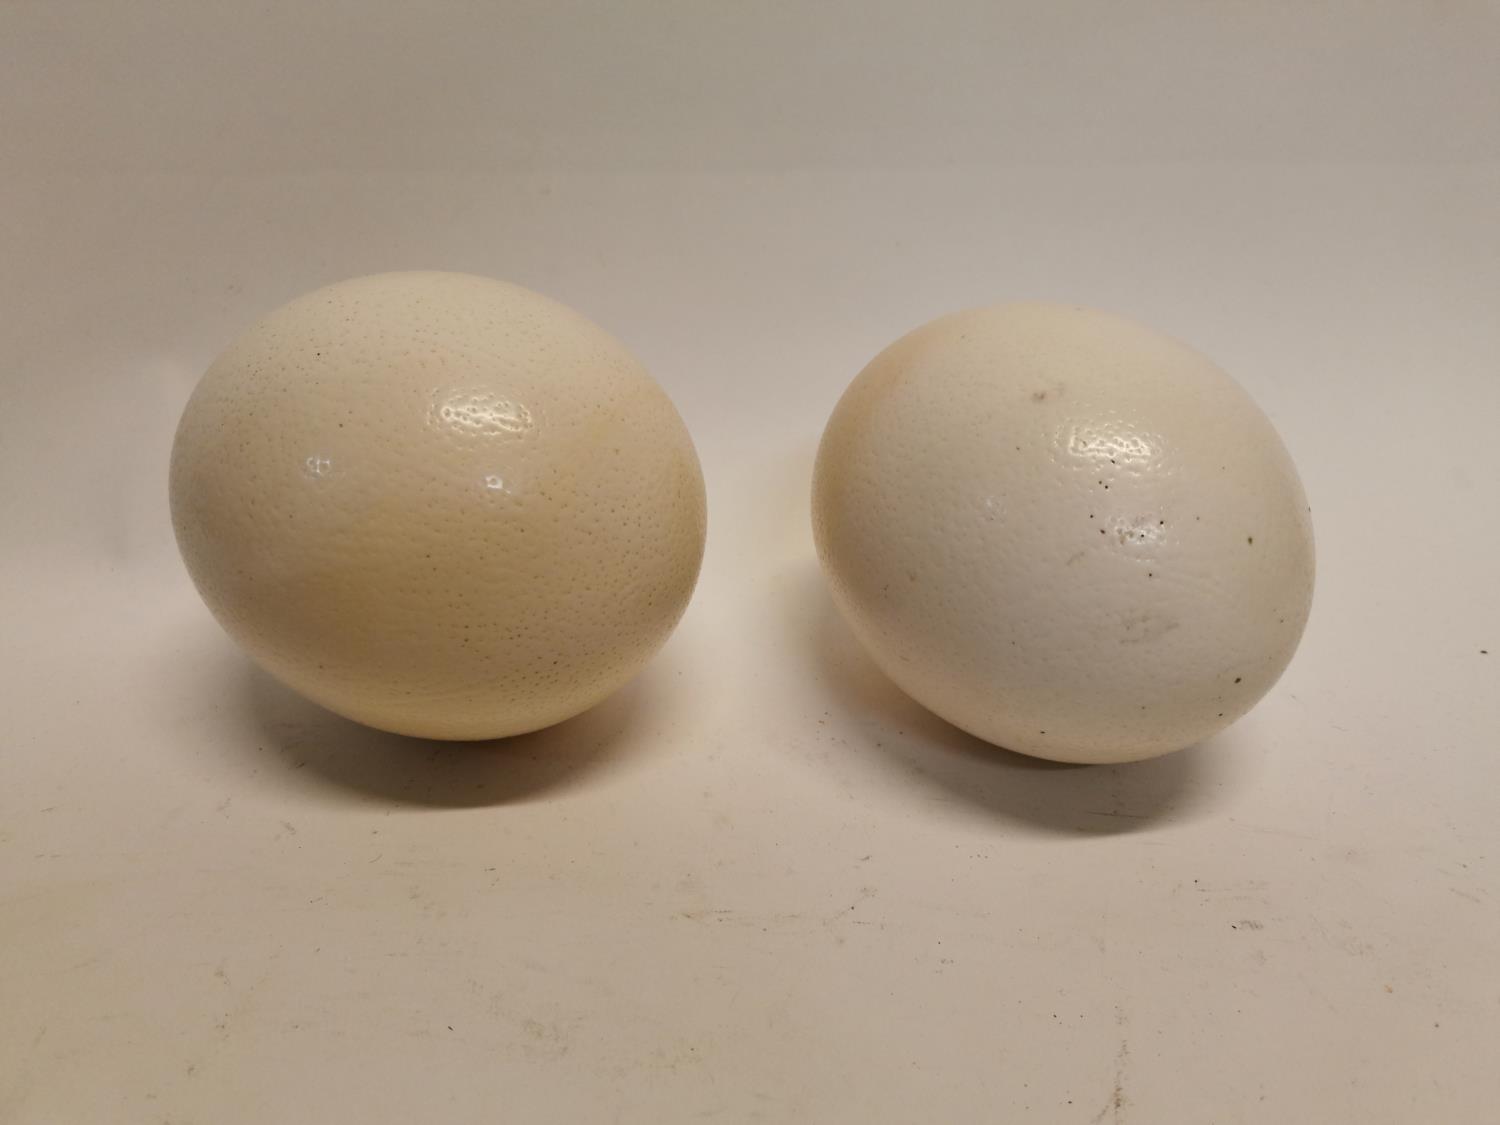 Two Ostrich eggs {15 cm H x 13 cm D}.